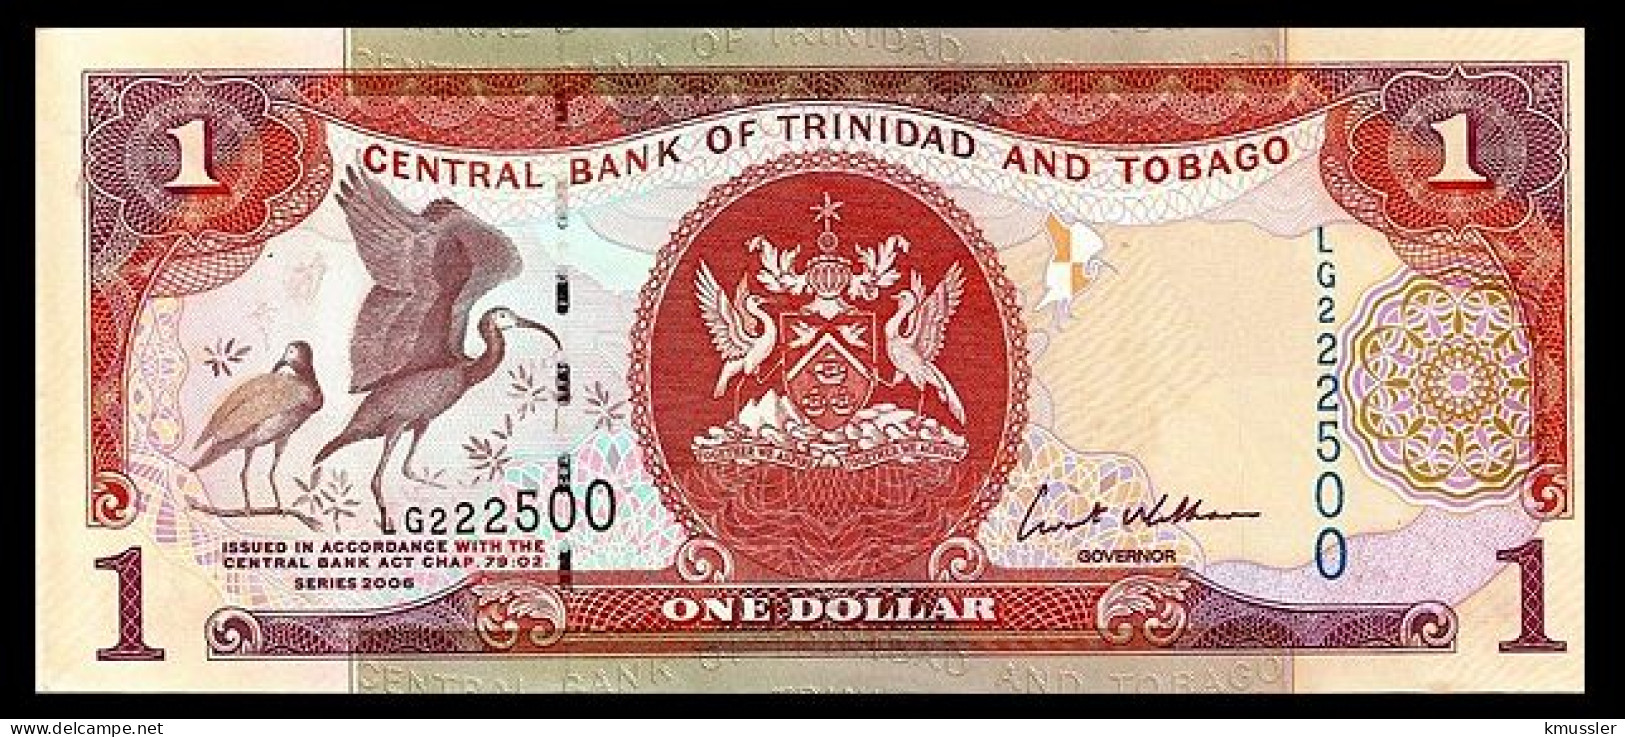 # # # Banknote Trinidad Und Tobago 1 Dollar 2002 UNC # # # - Trinité & Tobago